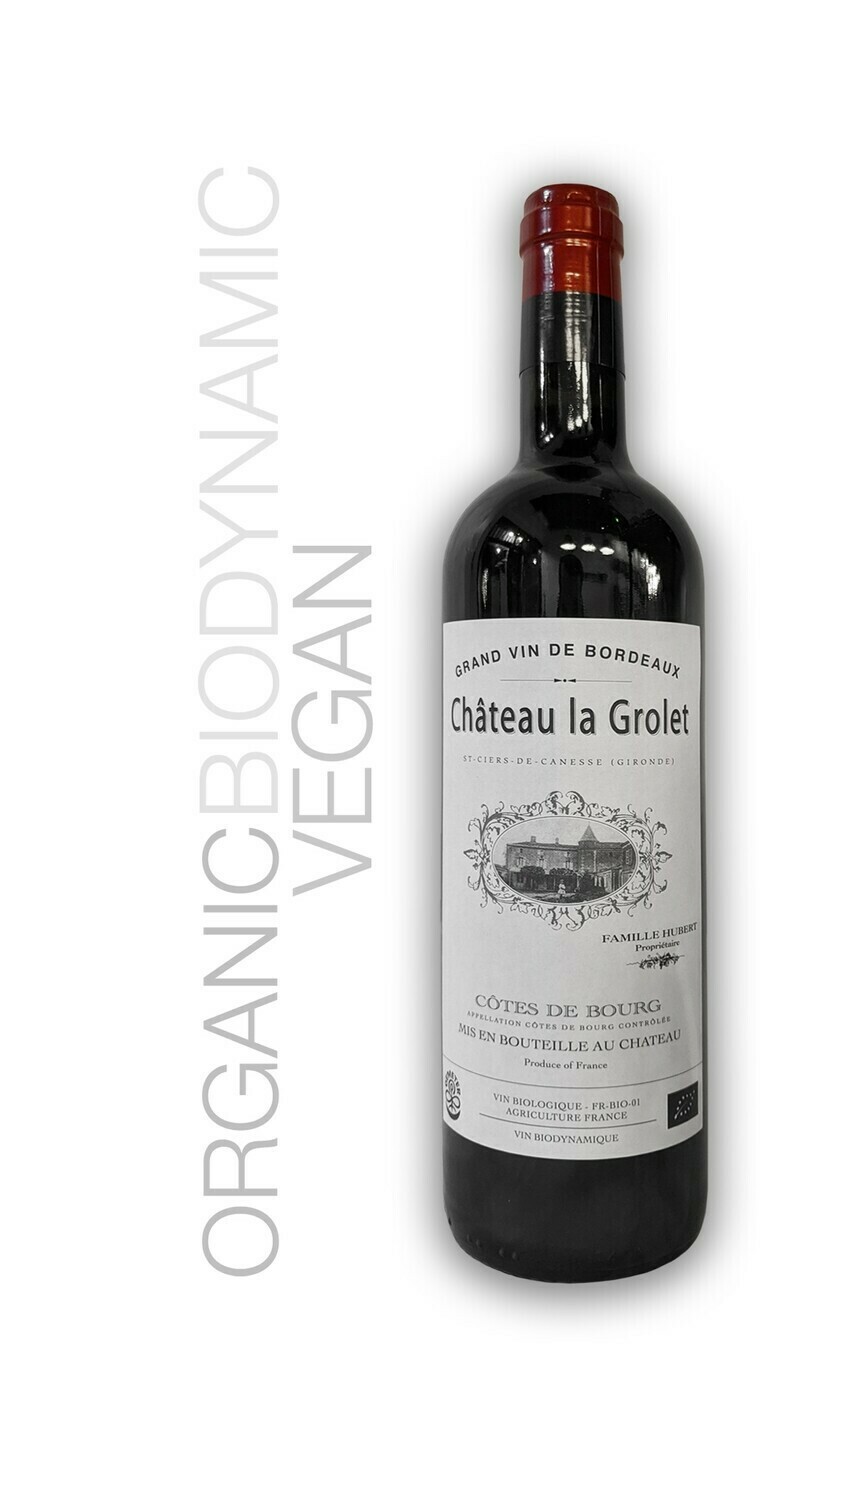 Chateau la Grolet - Grand Vin de Bordeaux 2017 